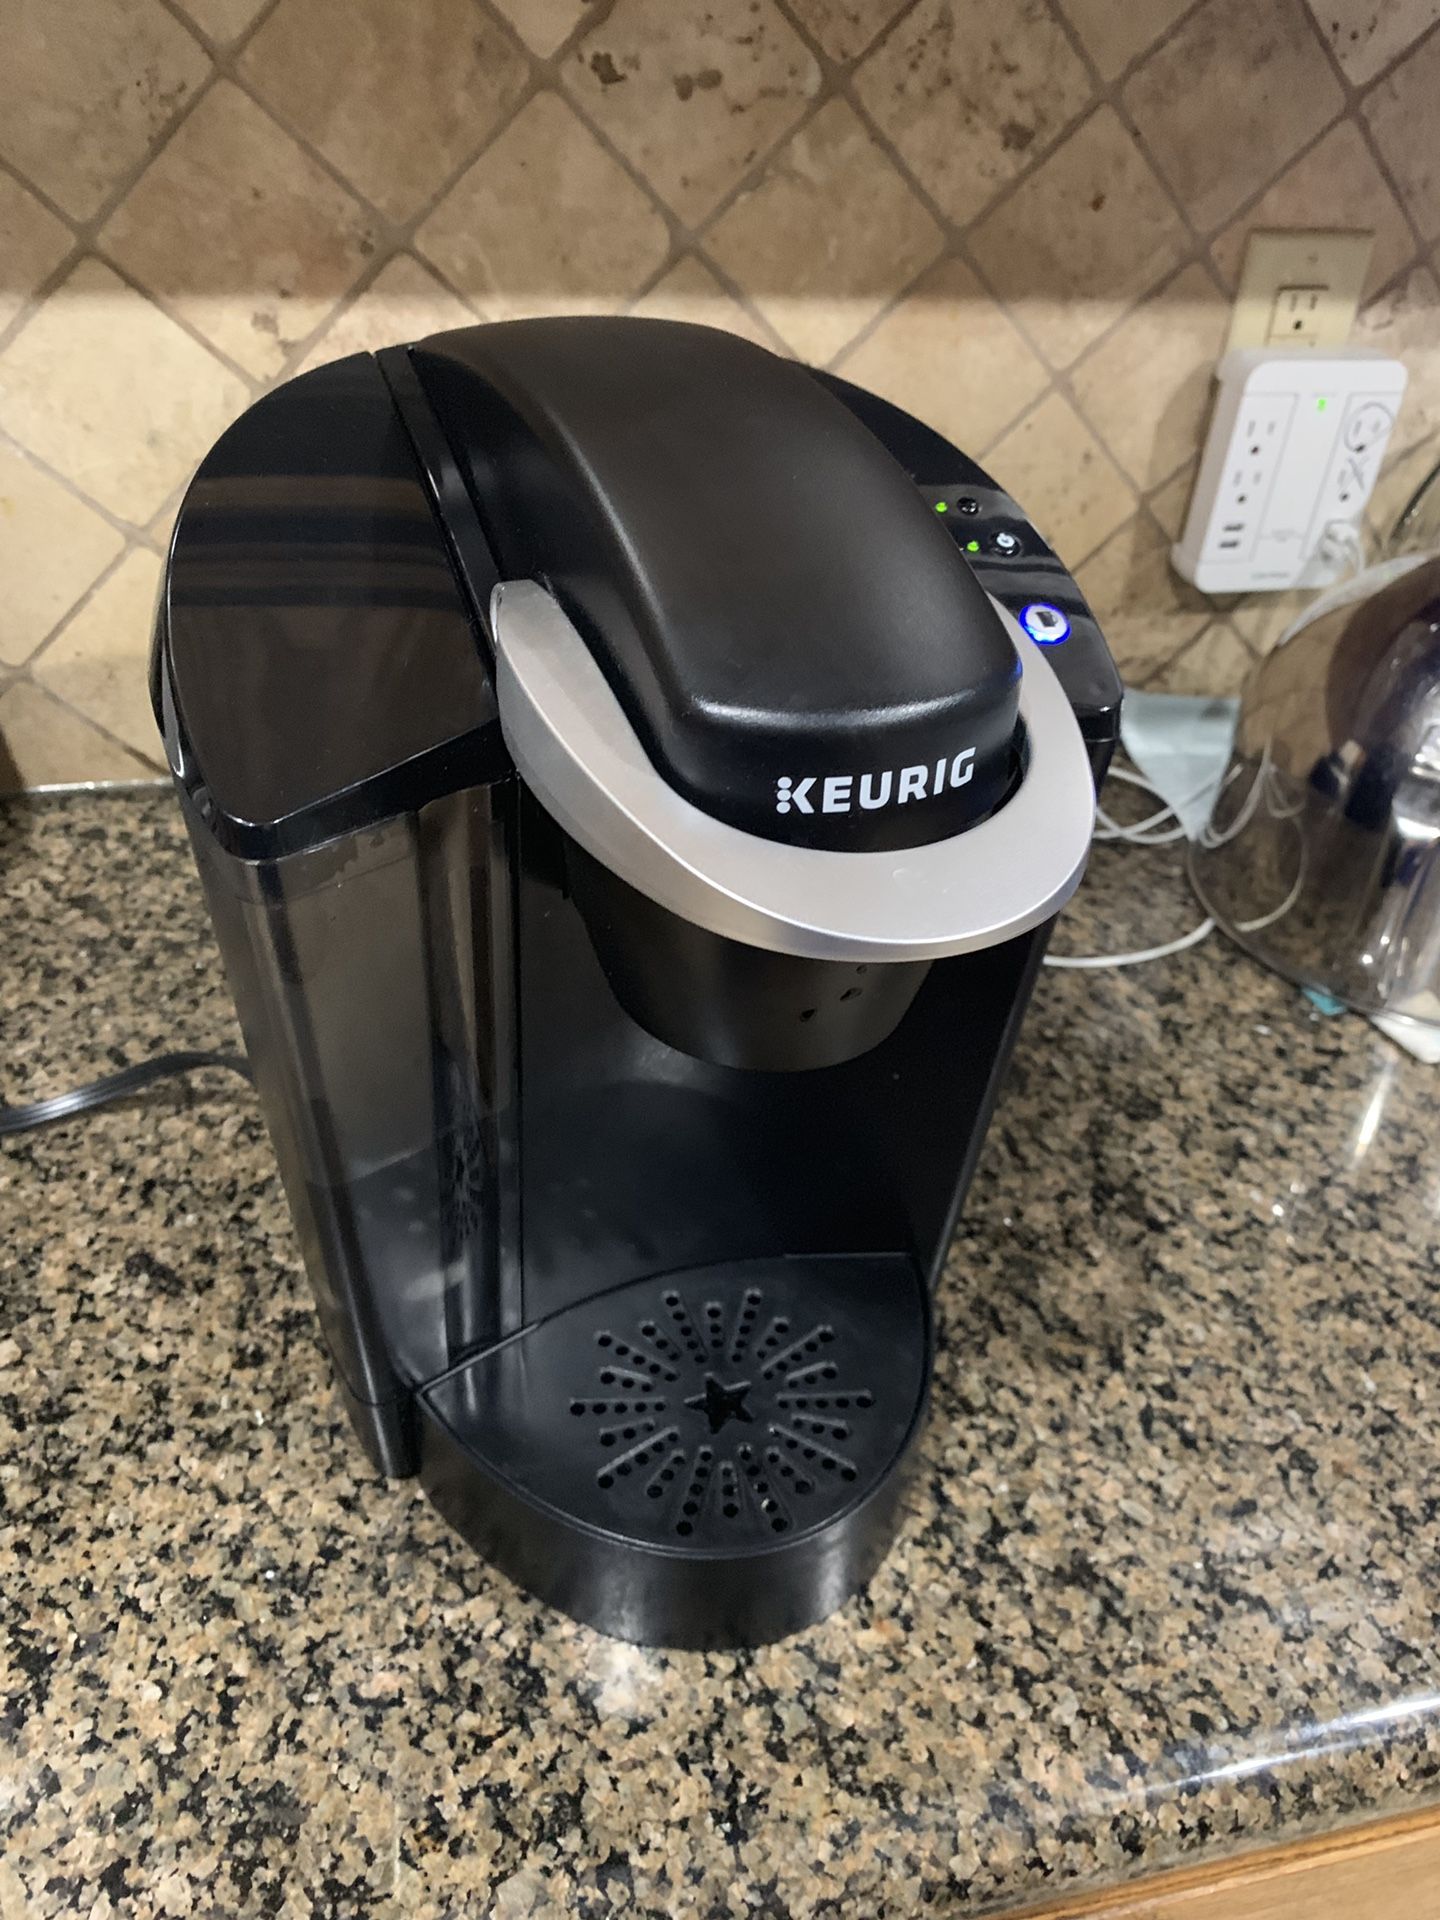 Keurig Hot Coffee maker